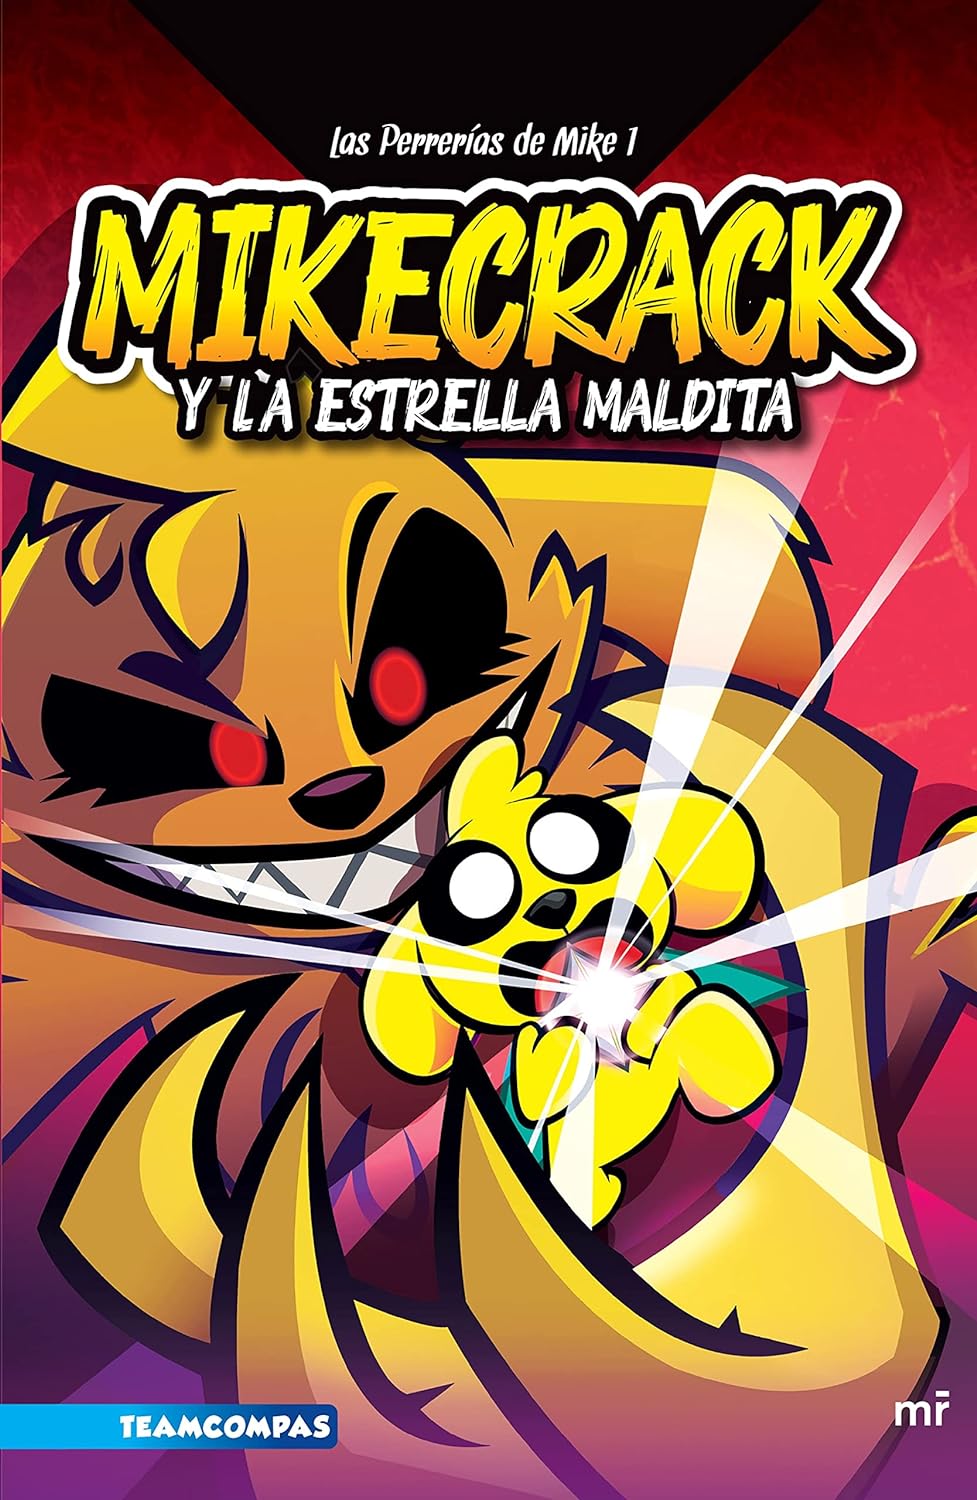 MIKECRACK Y LA ESTRELLA MALDITA 1 - Mikecrack, El Trollino, Timba VK